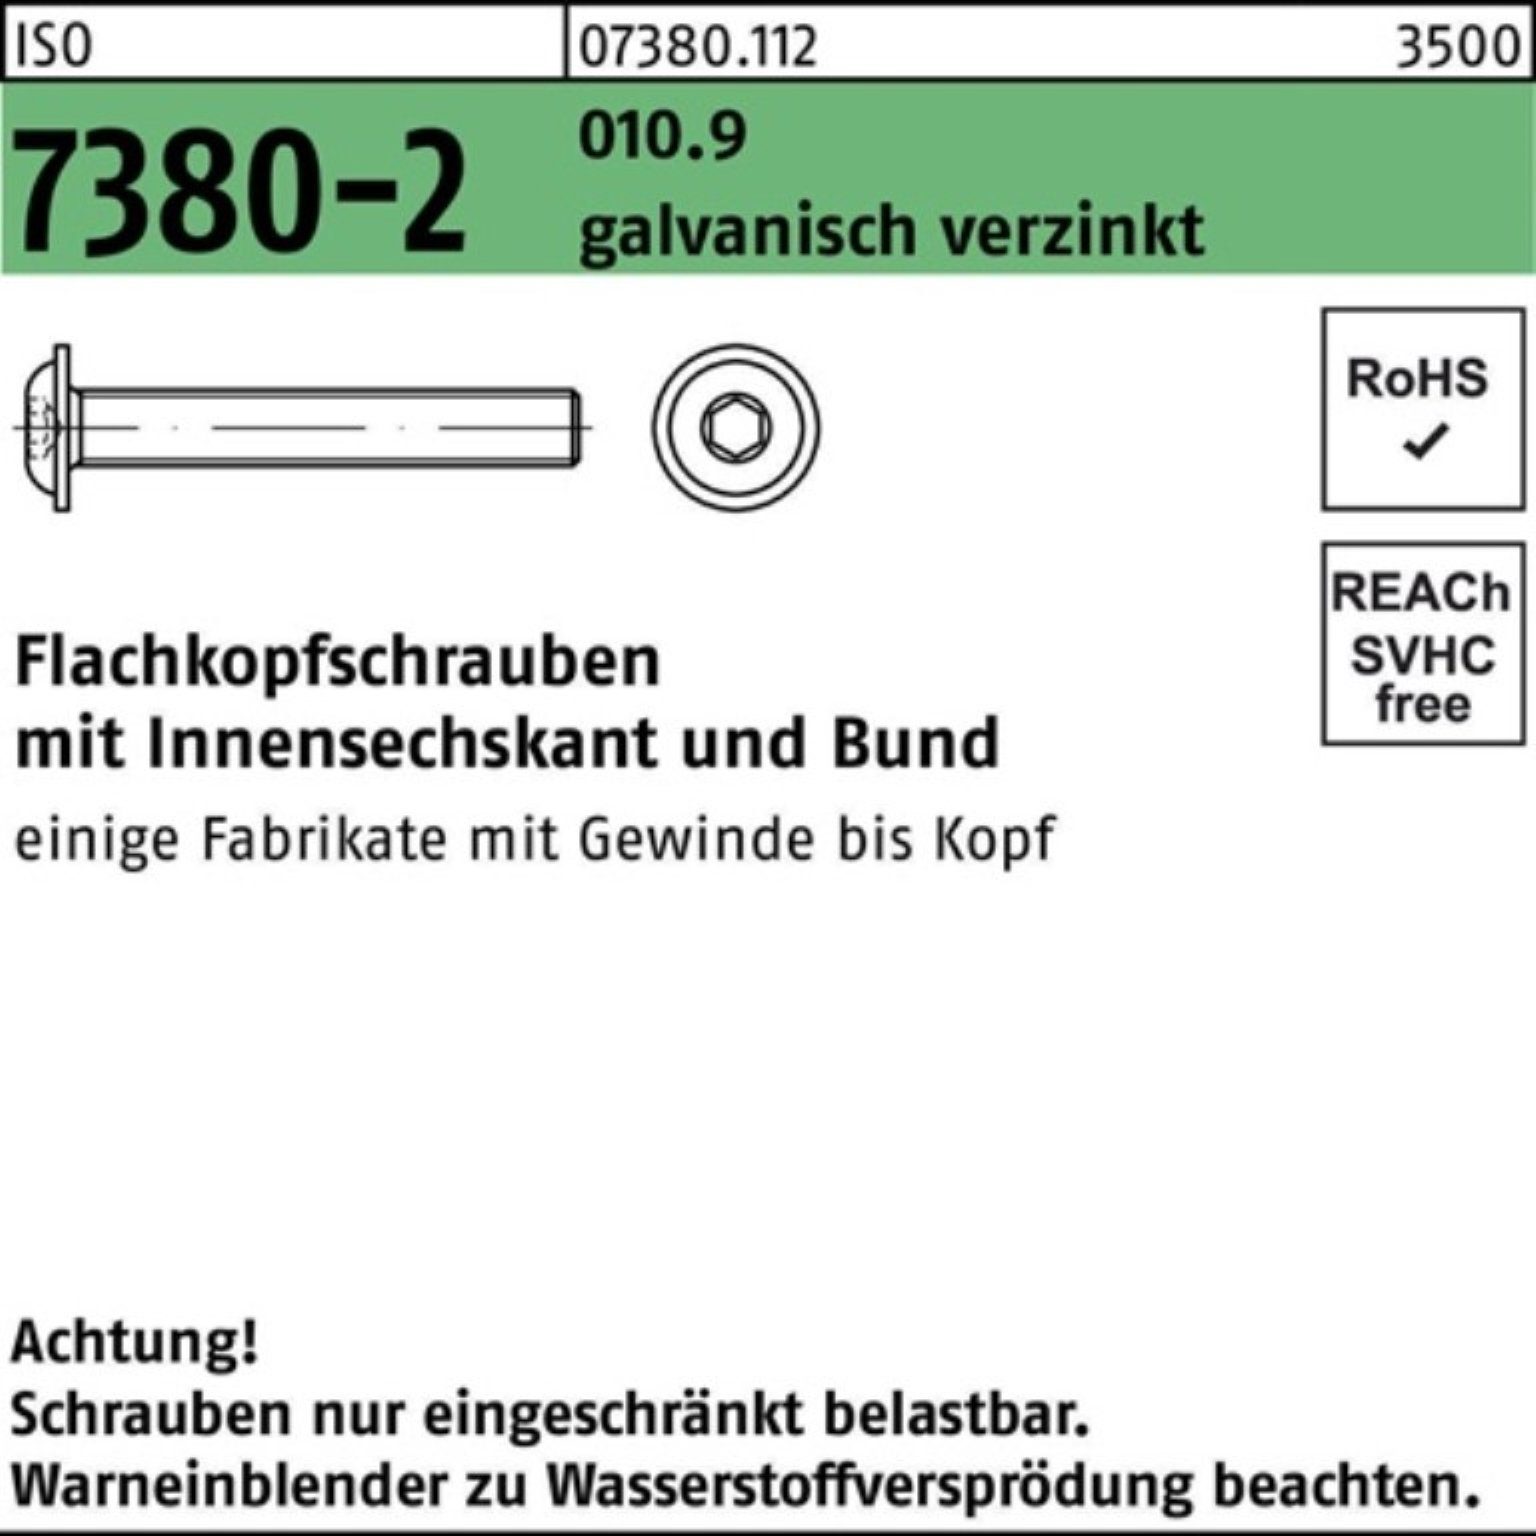 Reyher Schraube 100er Pack ga Bund/Innen-6kt ISO Flachkopfschraube M12x40 010.9 7380-2